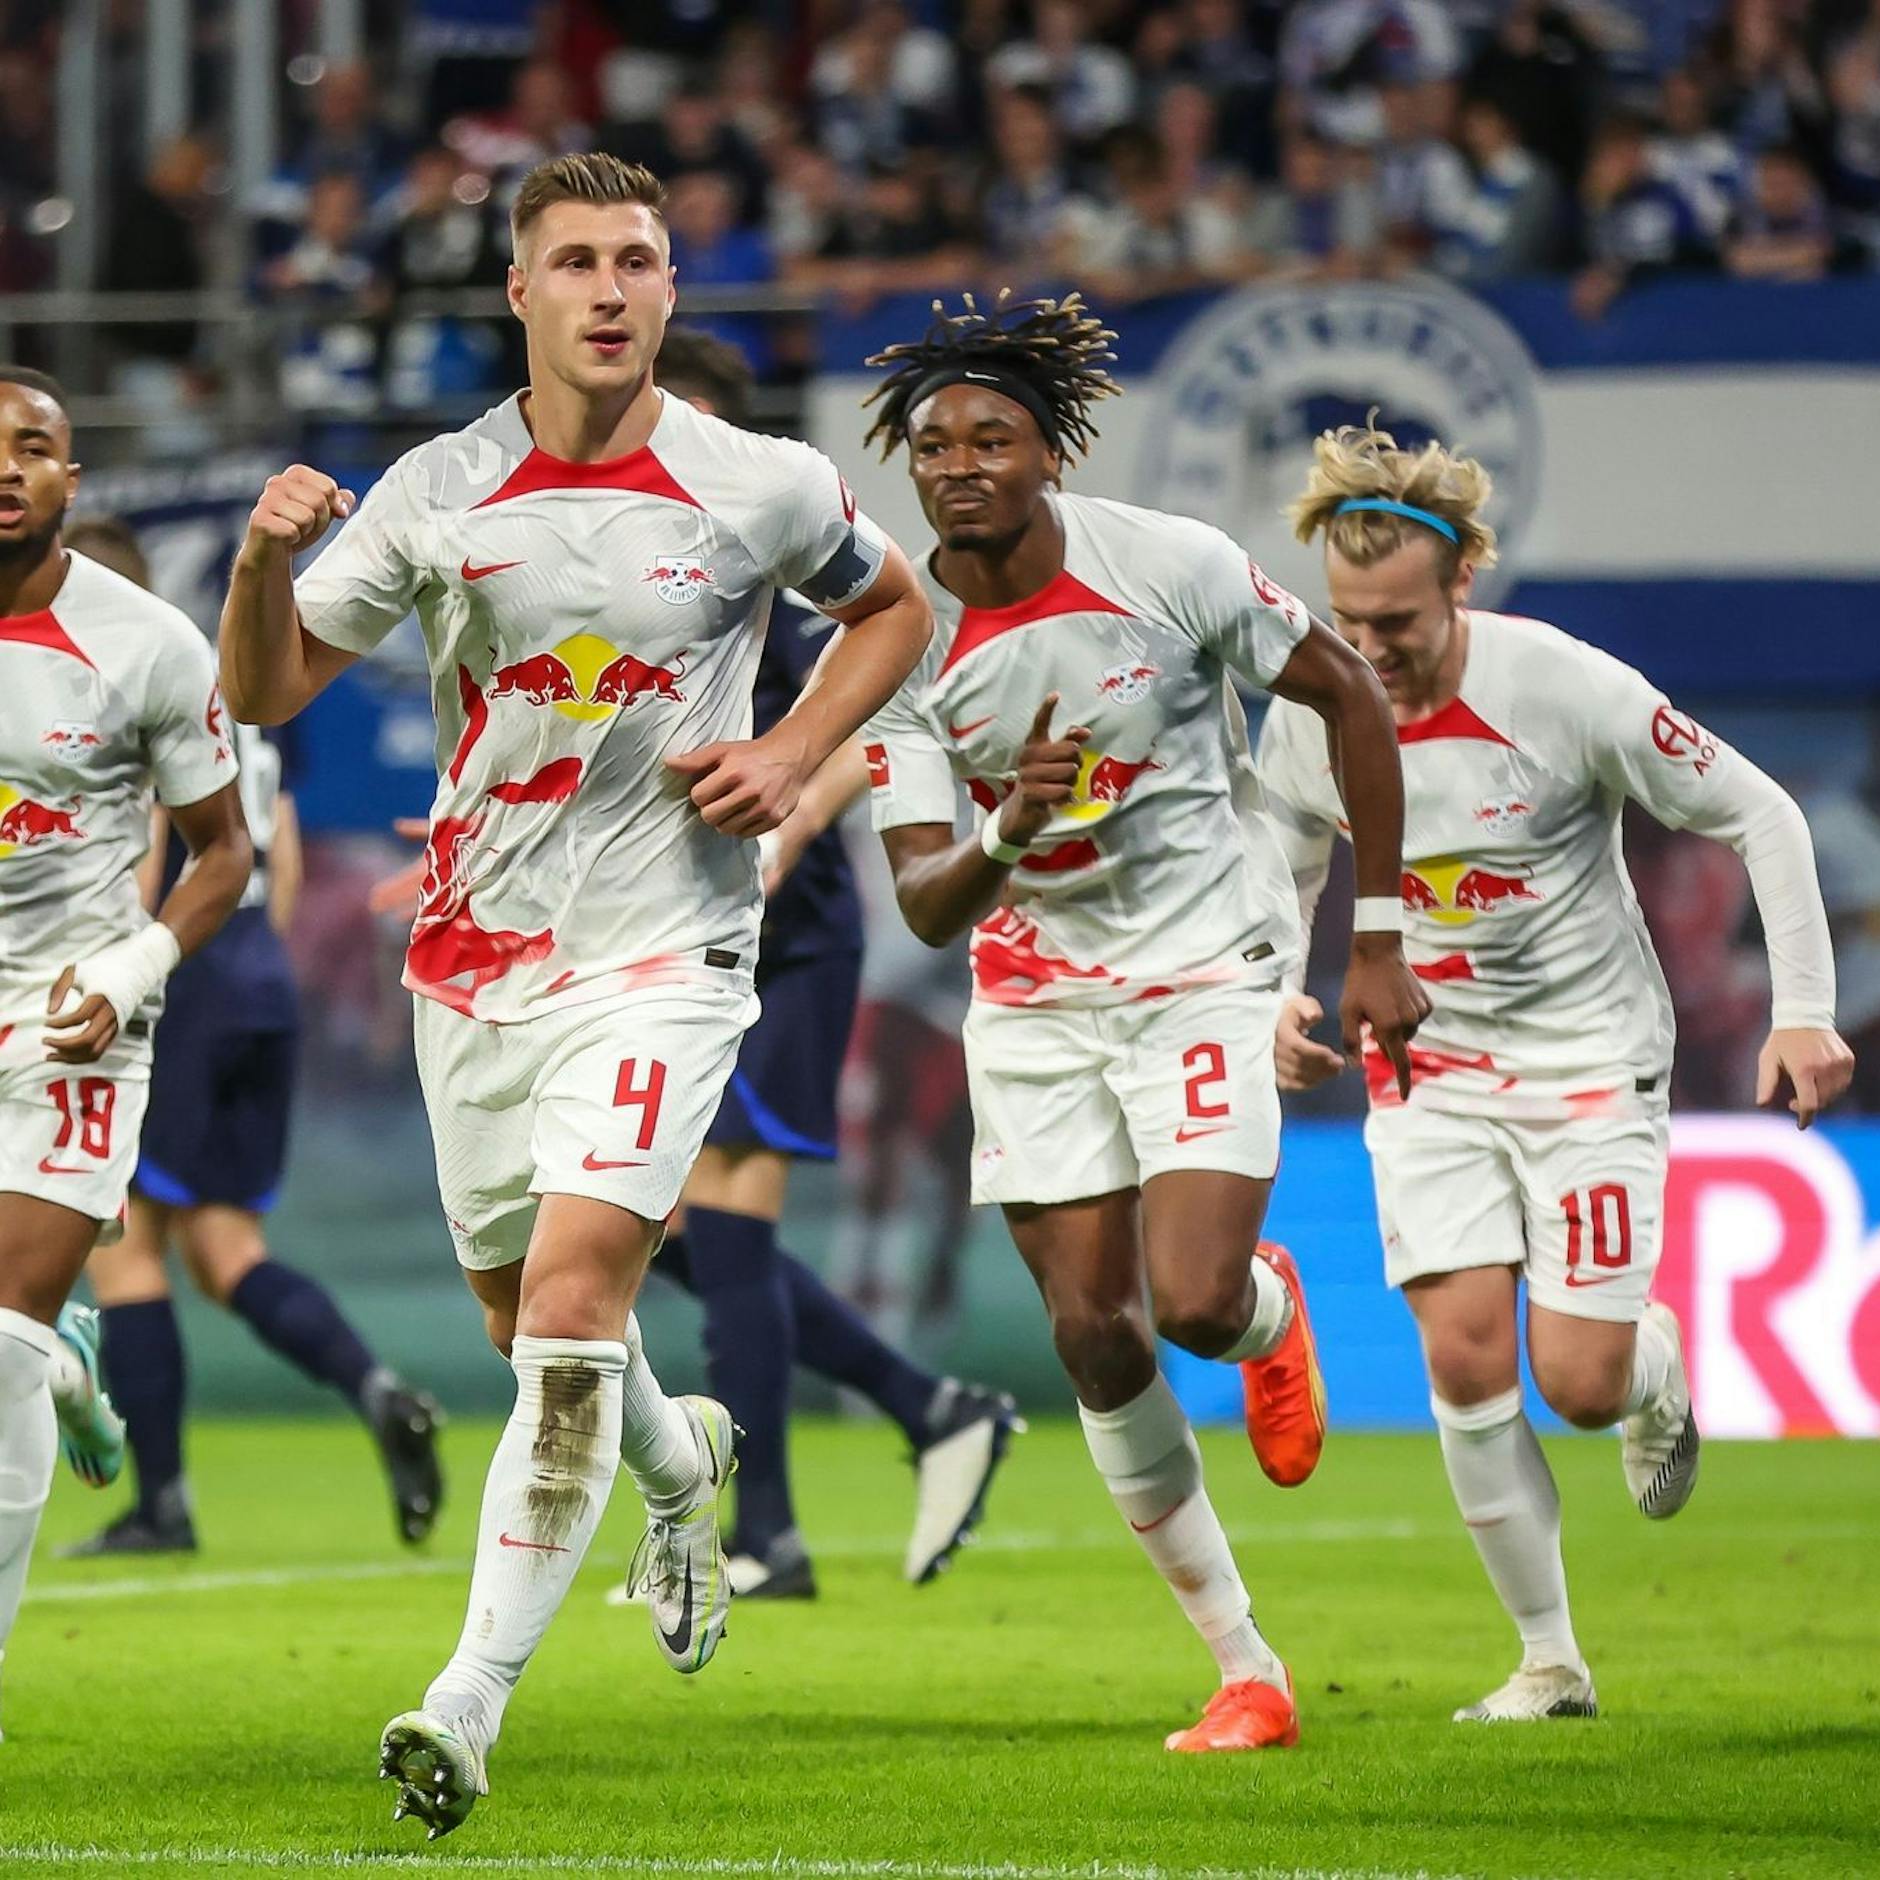 Image - Stuttgart feiert ersten Sieg - Frankfurt überrollt Bayer